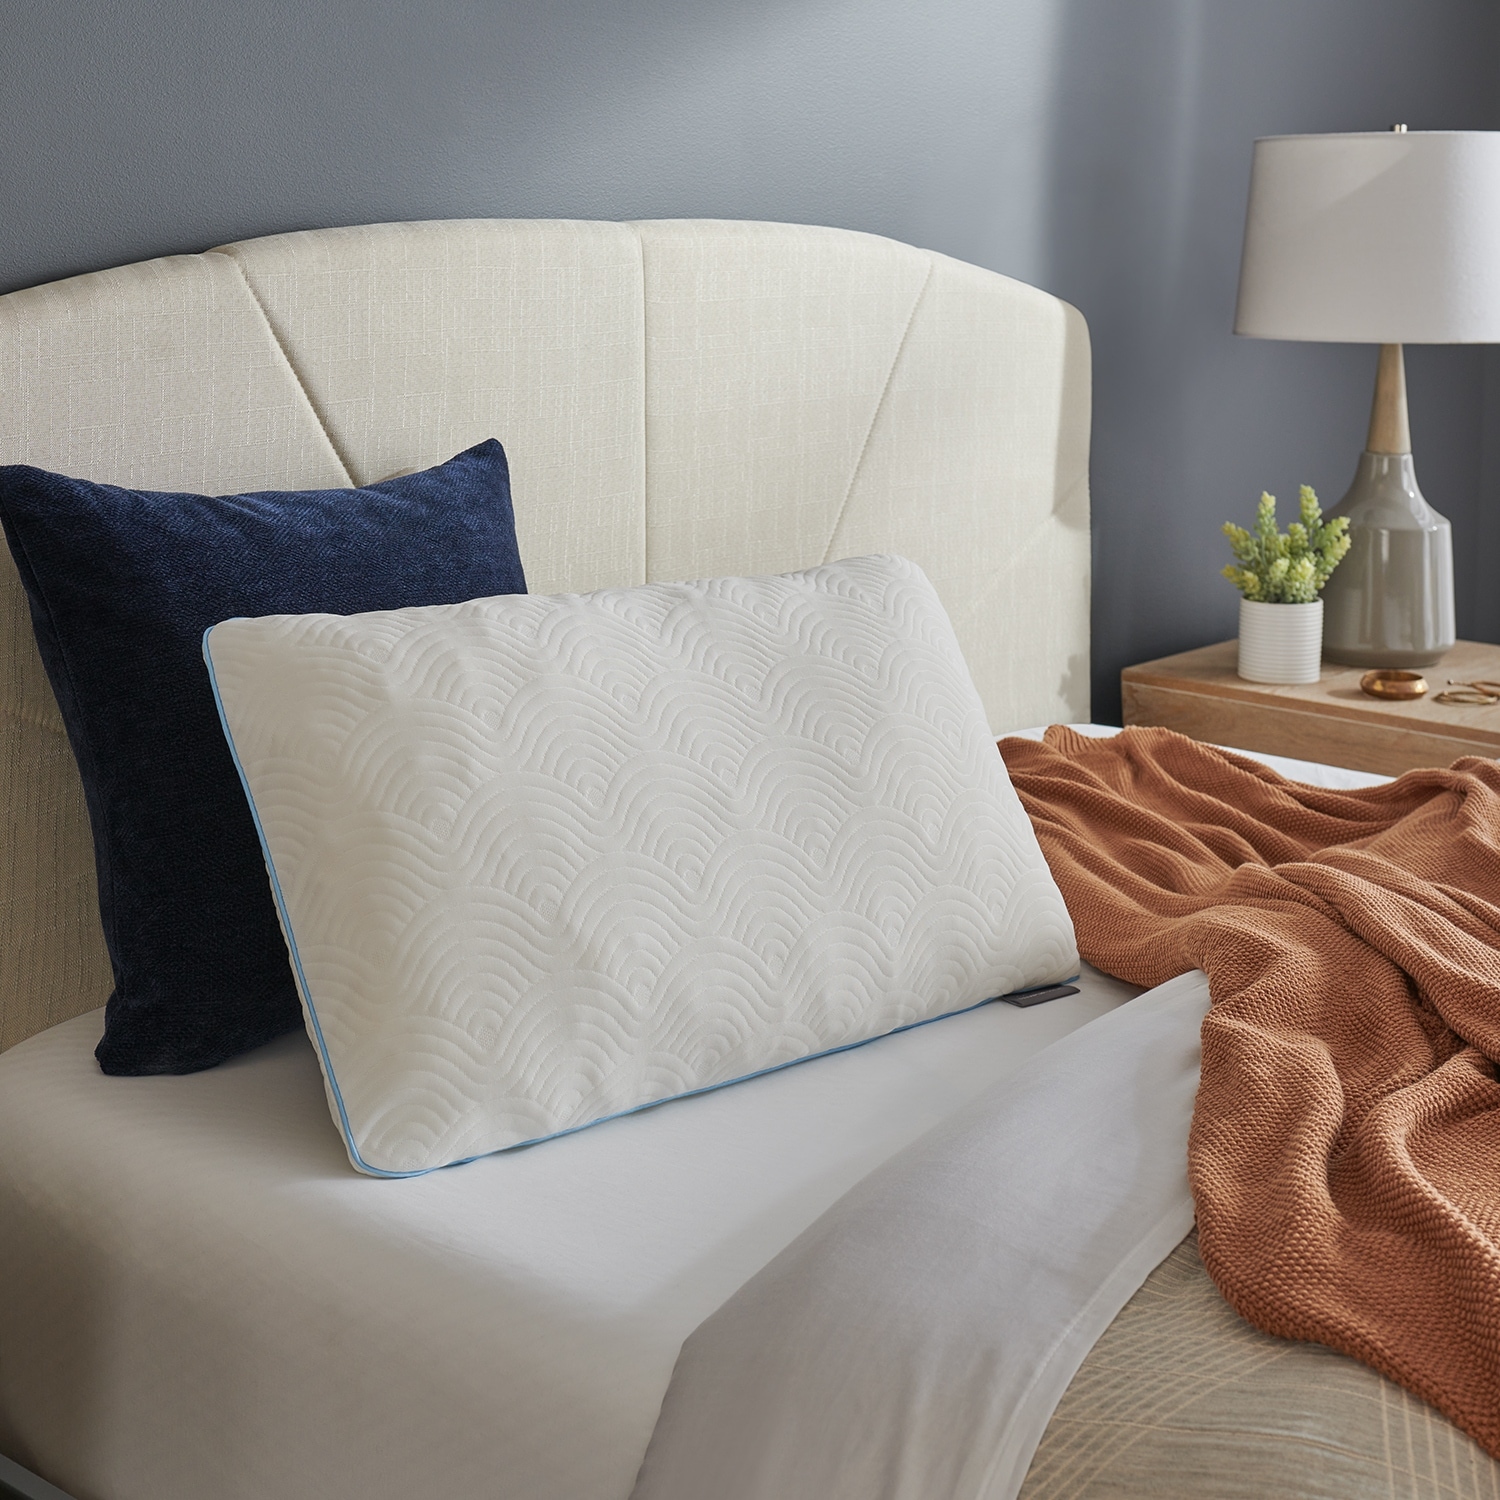 Adjustable Comfort Pillow | Beddy's Standard